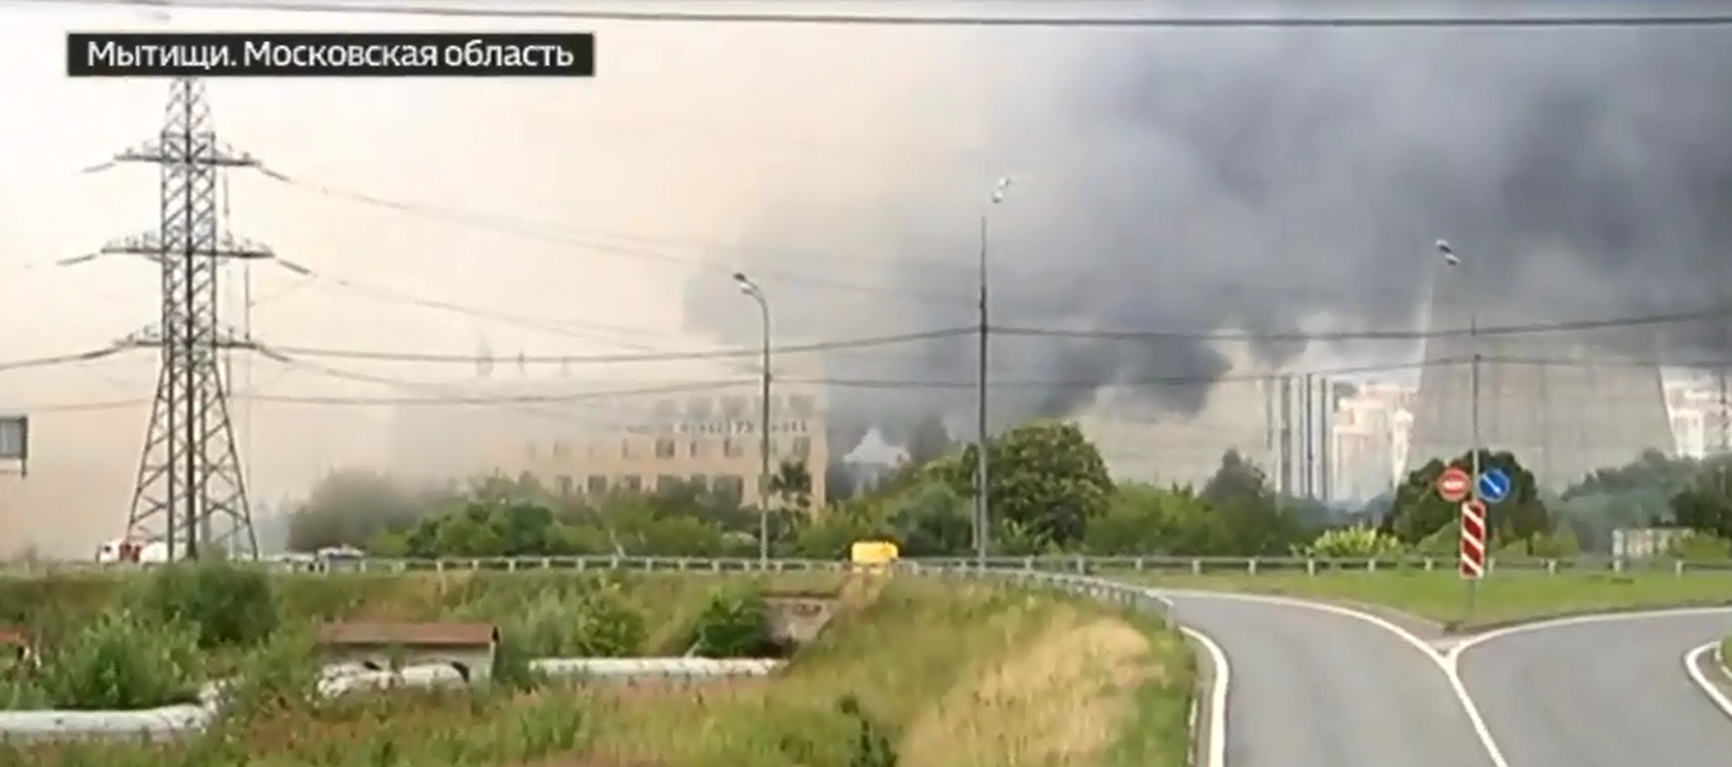 МЧС сообщило о ликвидации пожара на газопроводе у ТЭЦ в Мытищах